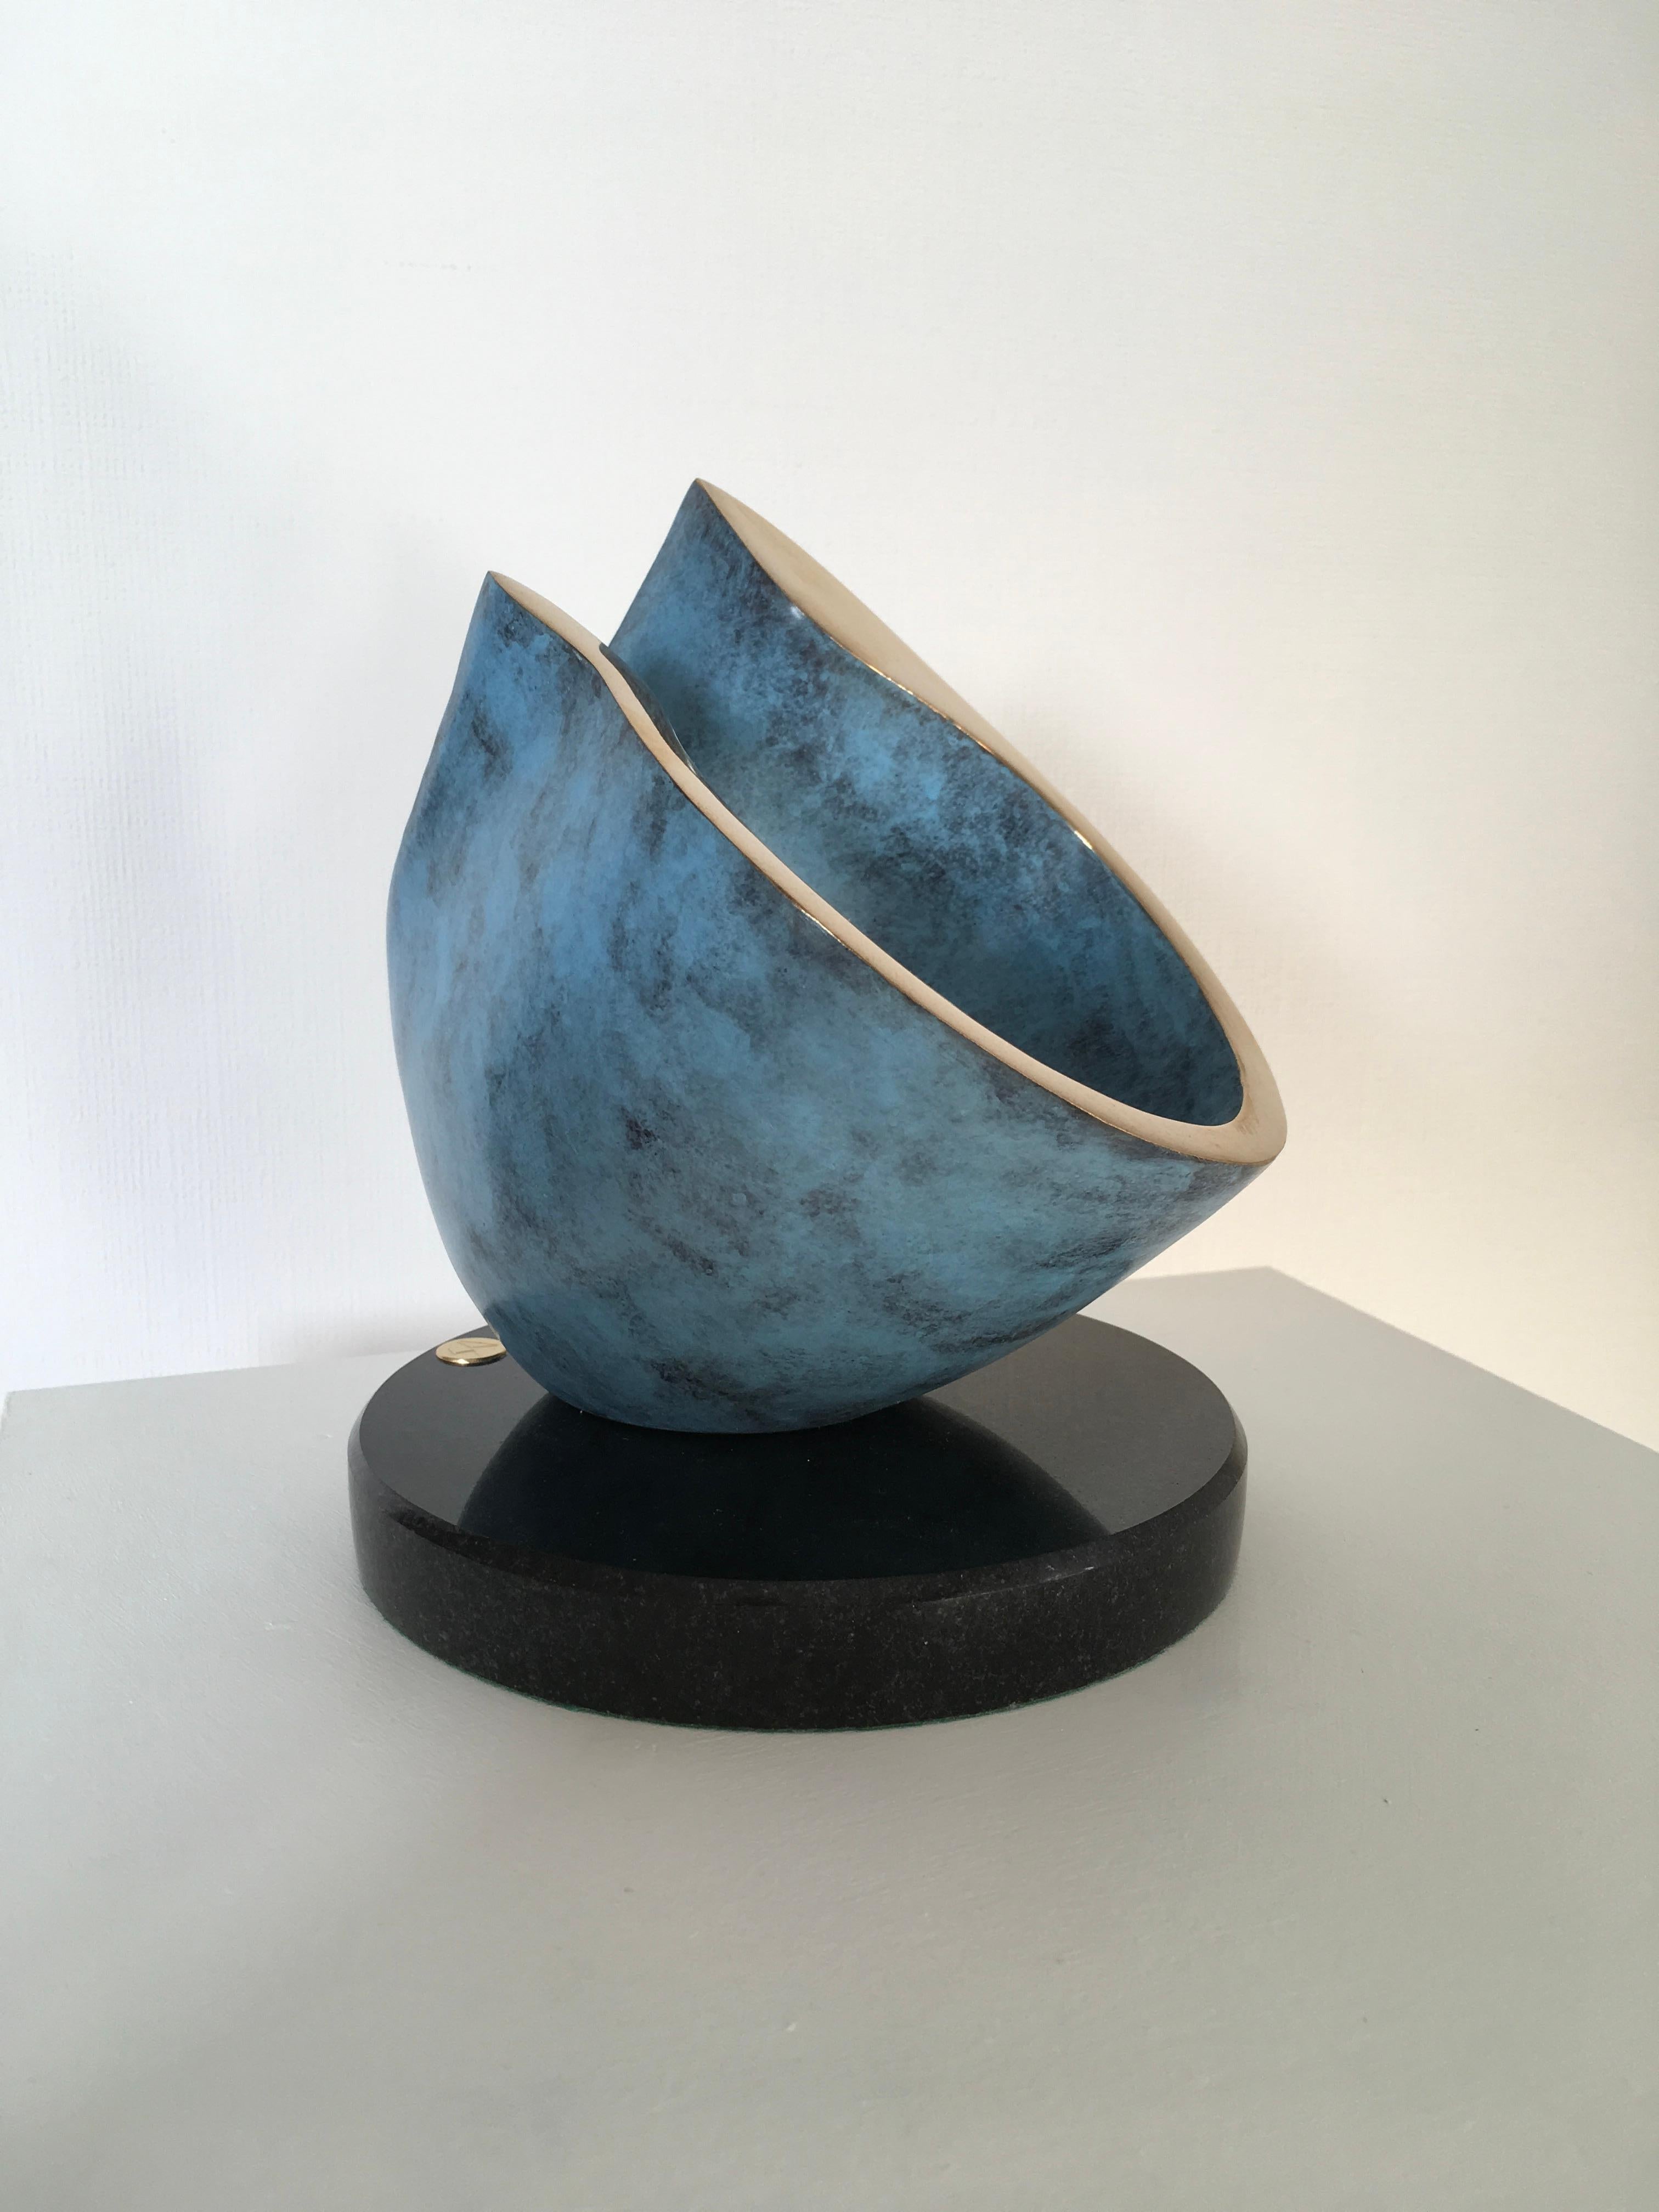 Tipped Hollow-original abstract bronze sculpture-artwork -contemporary art - Modern Art by David Sprakes